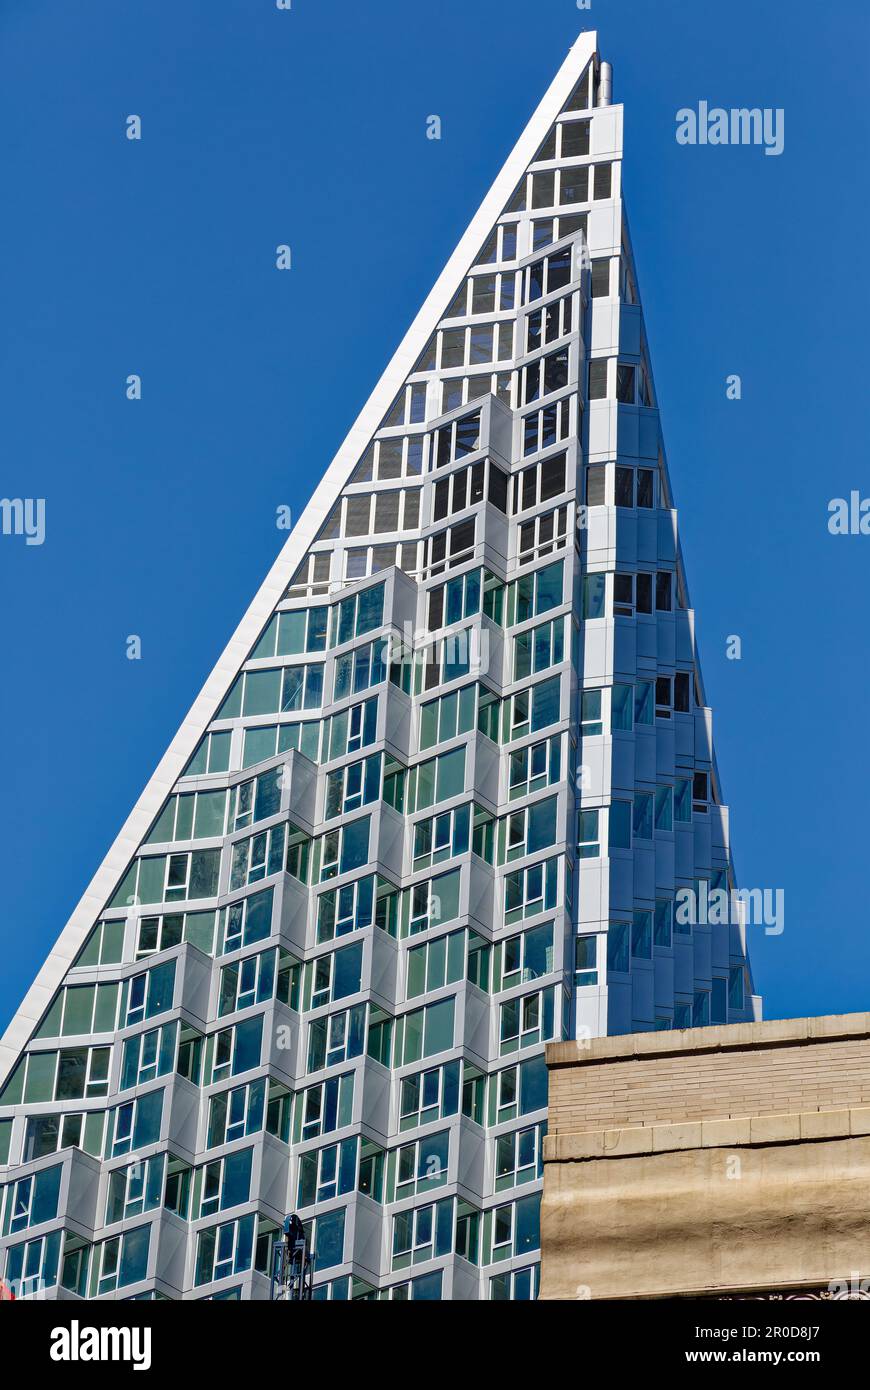 VIA 57 West Apartments representa un nuevo tipo de edificio – courtscraper – según el arquitecto Bjarke Ingels Group. Foto de stock